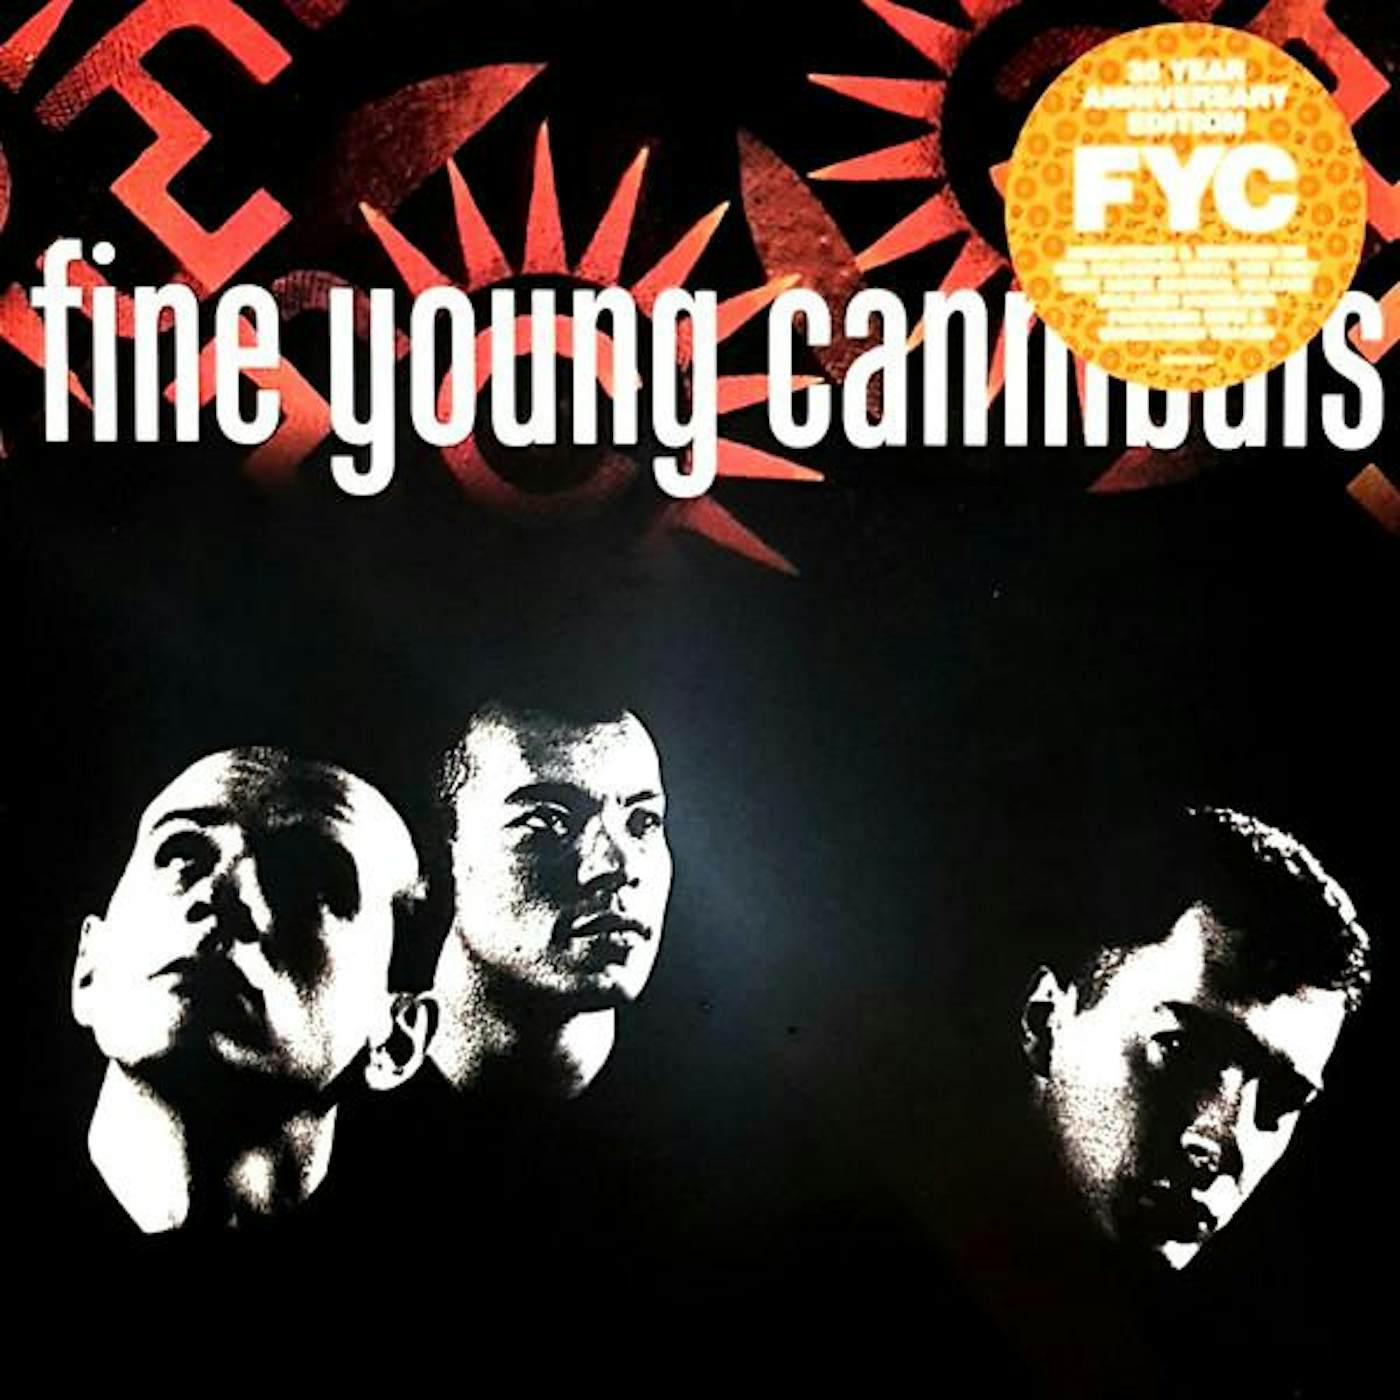 FINE YOUNG CANNIBALS Vinyl Record